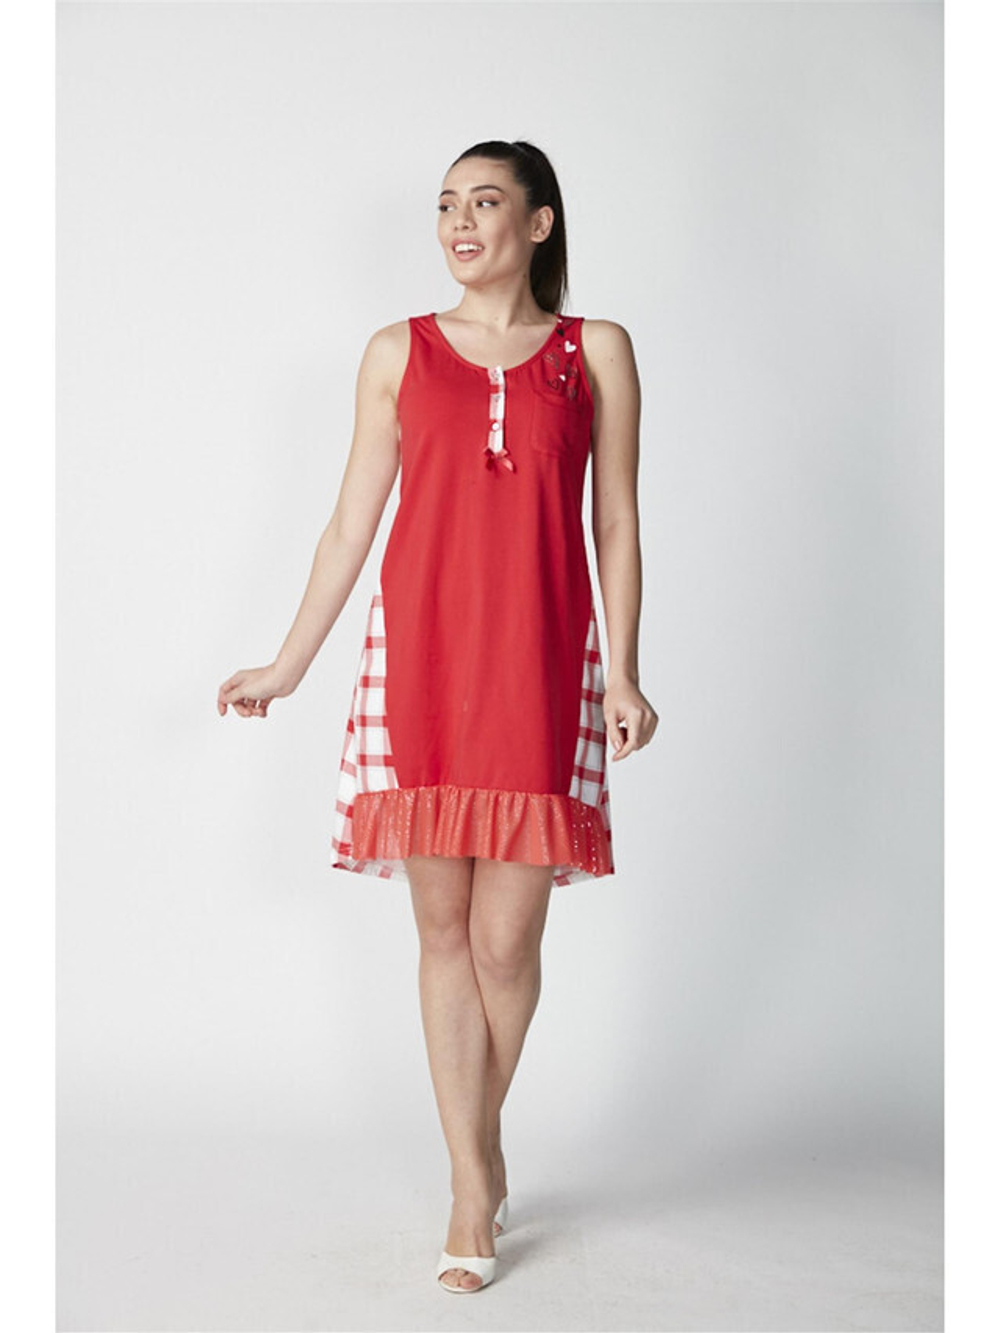 RELAX MODE / Ночная сорочка женская домашнее платье ночнушка с кружевом - 15051